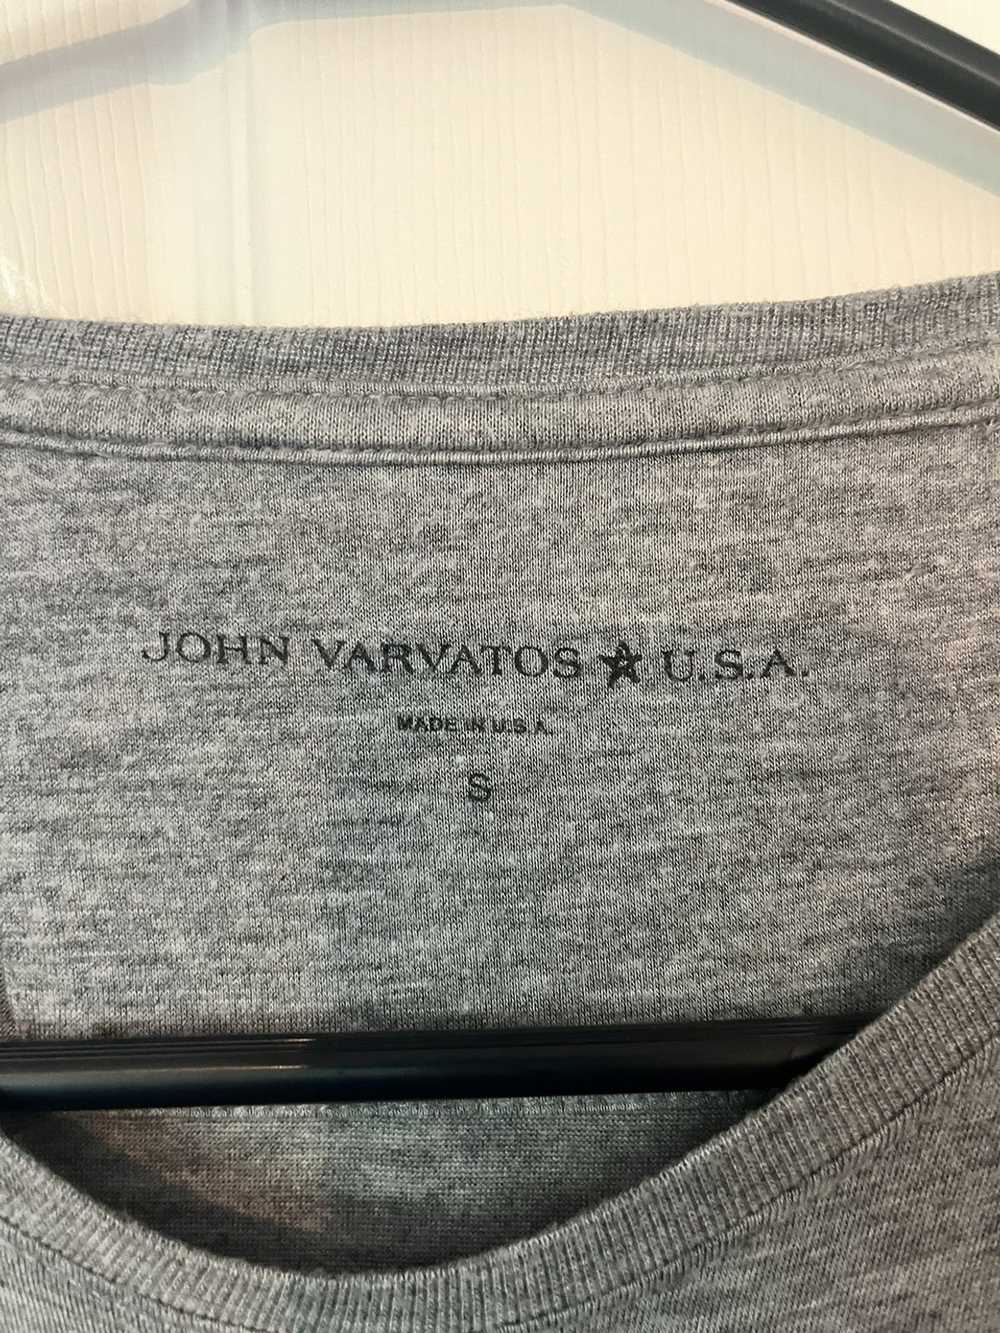 John Varvatos John Varvatos skeleton T-shirt - image 2